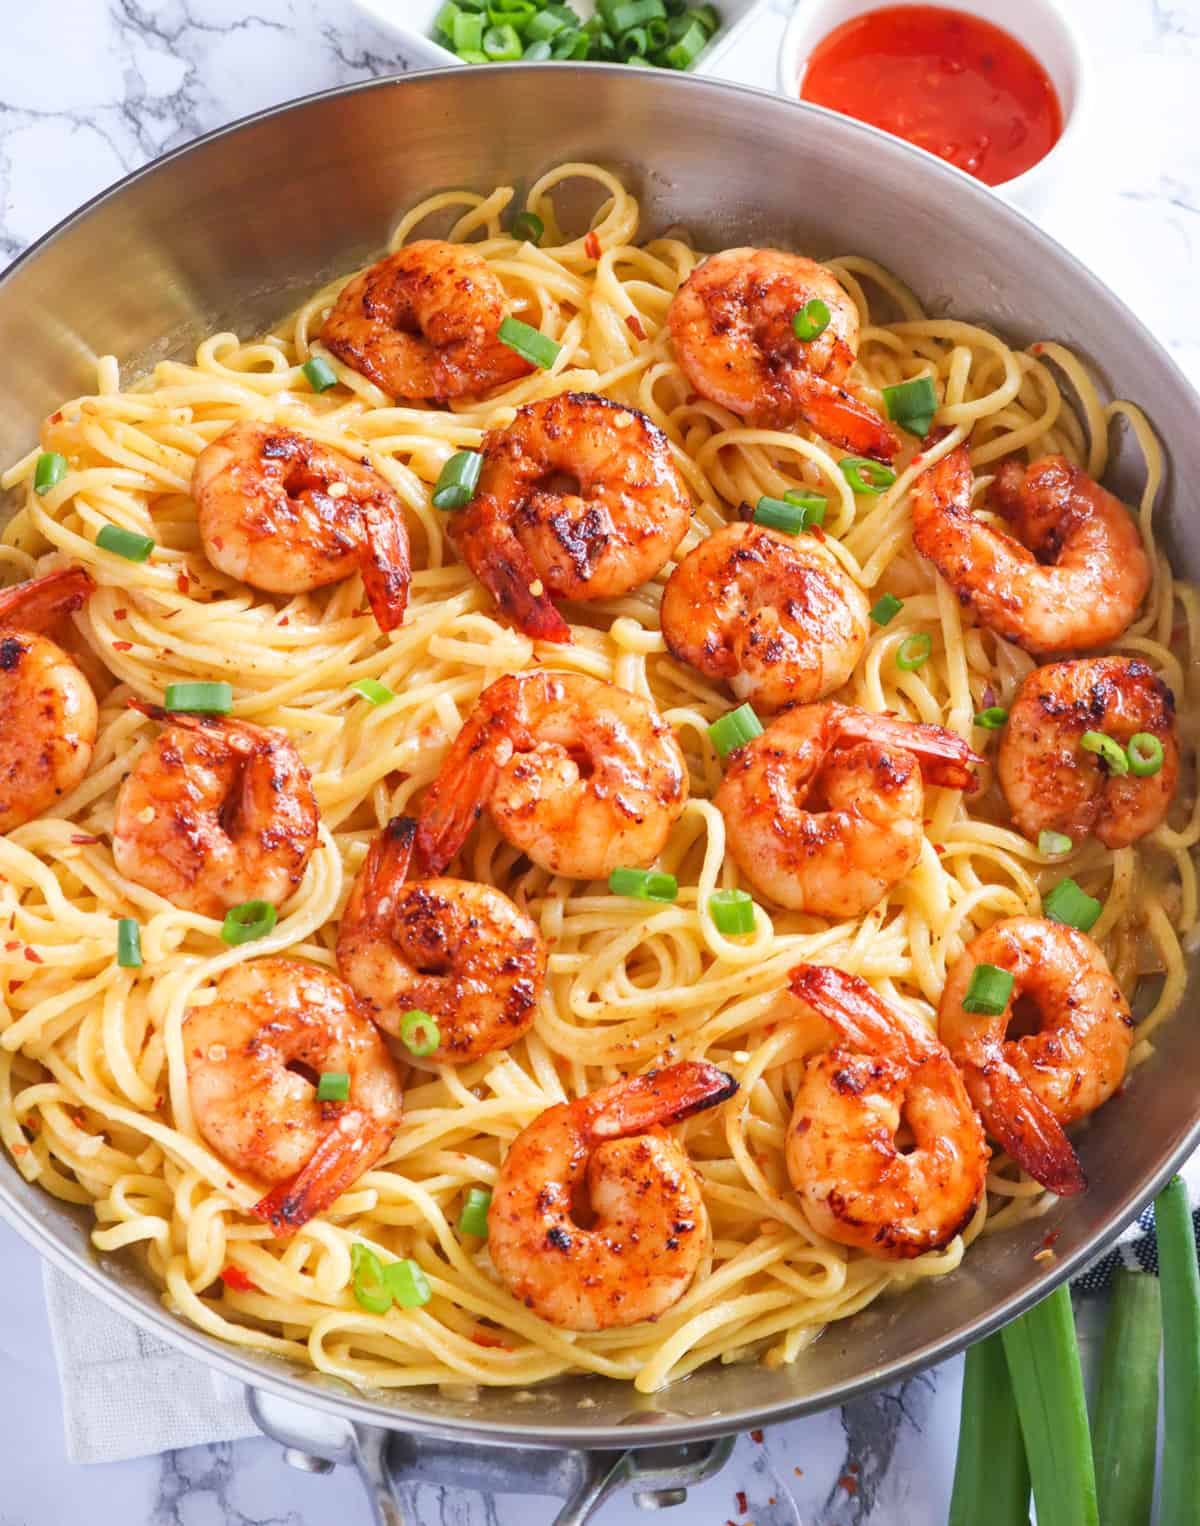 Serving up delicious, steaming bang bang shrimp pasta